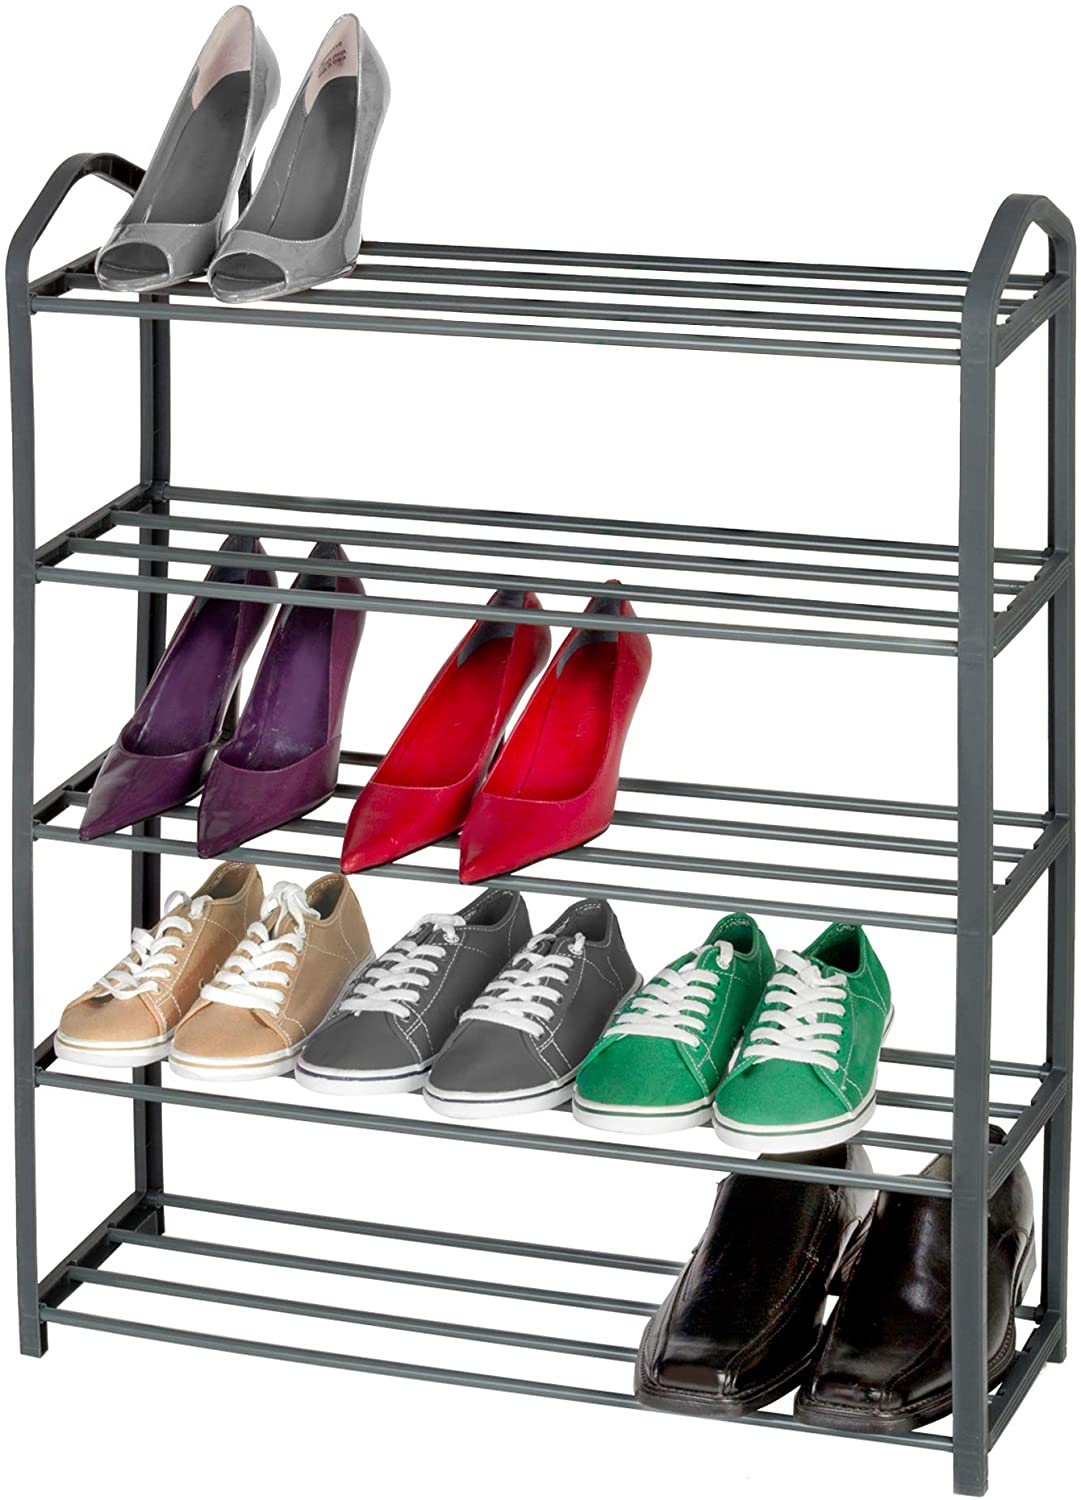 10 Tiers Tall Narrow Shoe Rack Sturdy Metal Shelf Closet Shoe Organizer  Storage